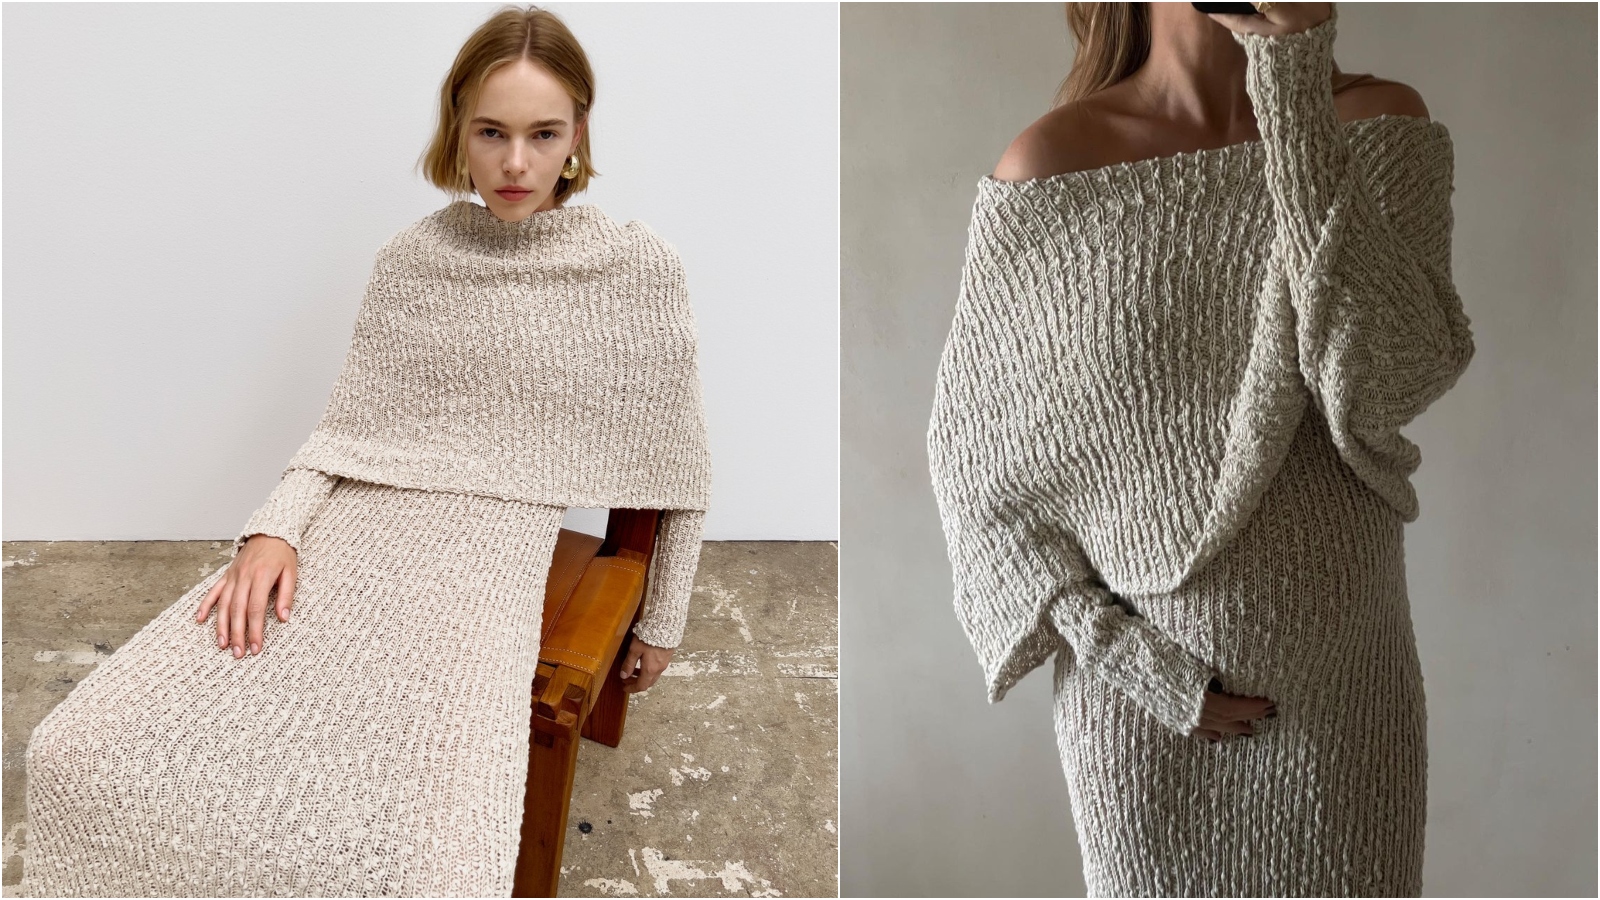 Danska dizajnerka Malene Birger ima najudobniju haljinu ove zime